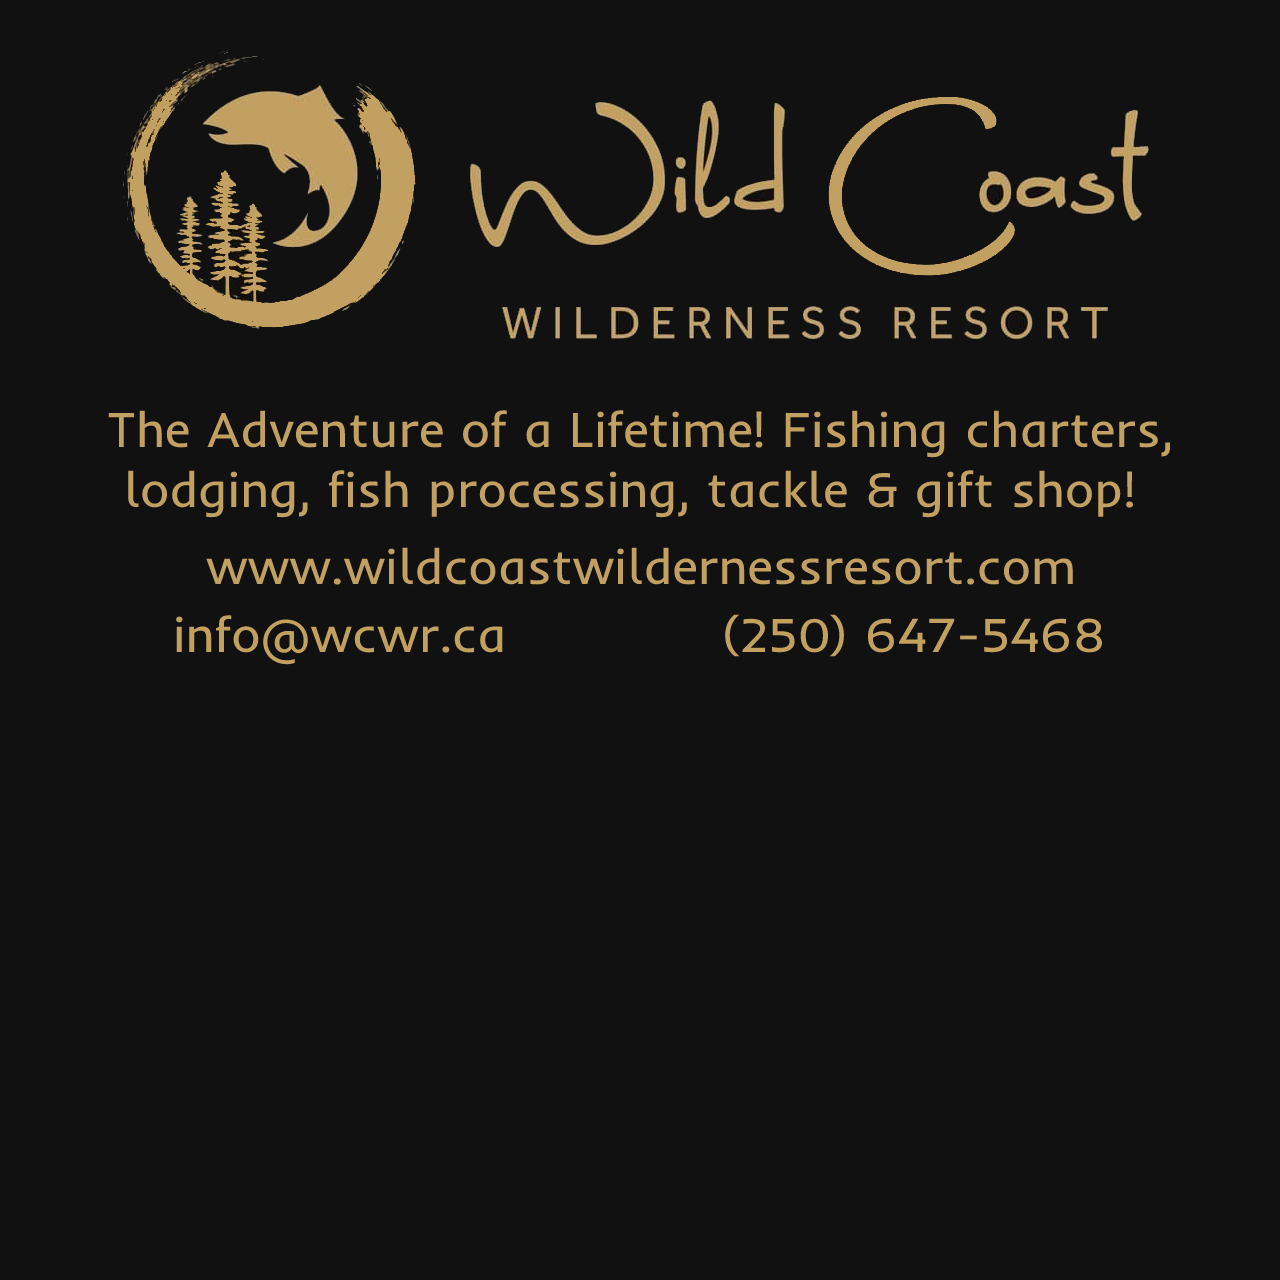 Wild Coast Wilderness Resort